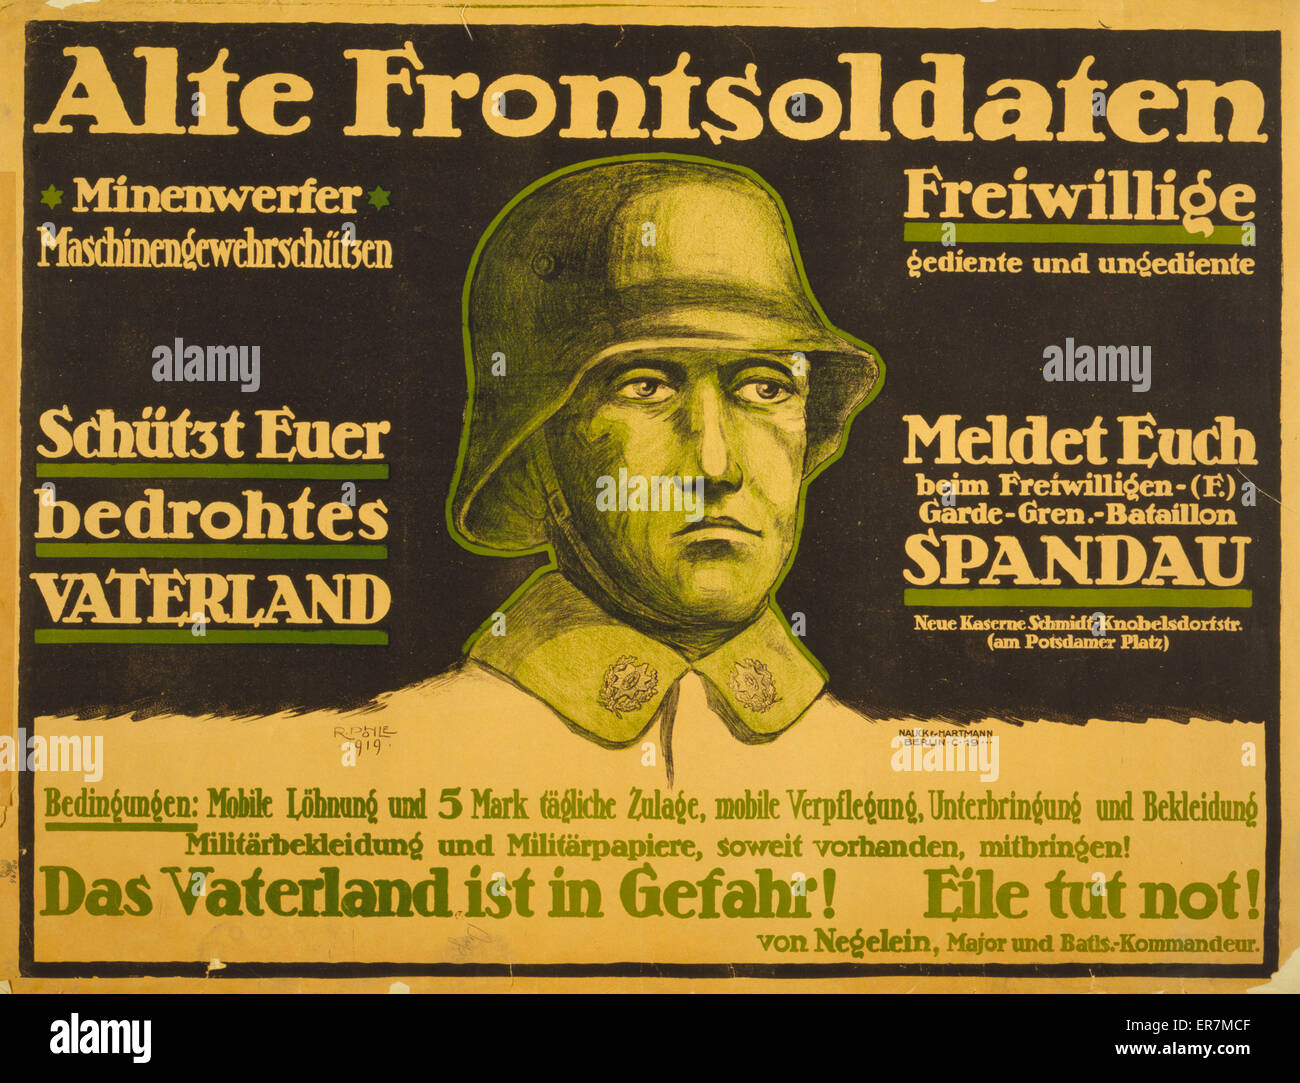 Alte Frontsoldaten ... Das Vaterland is in Gefahr! Eile tut Stock Photo